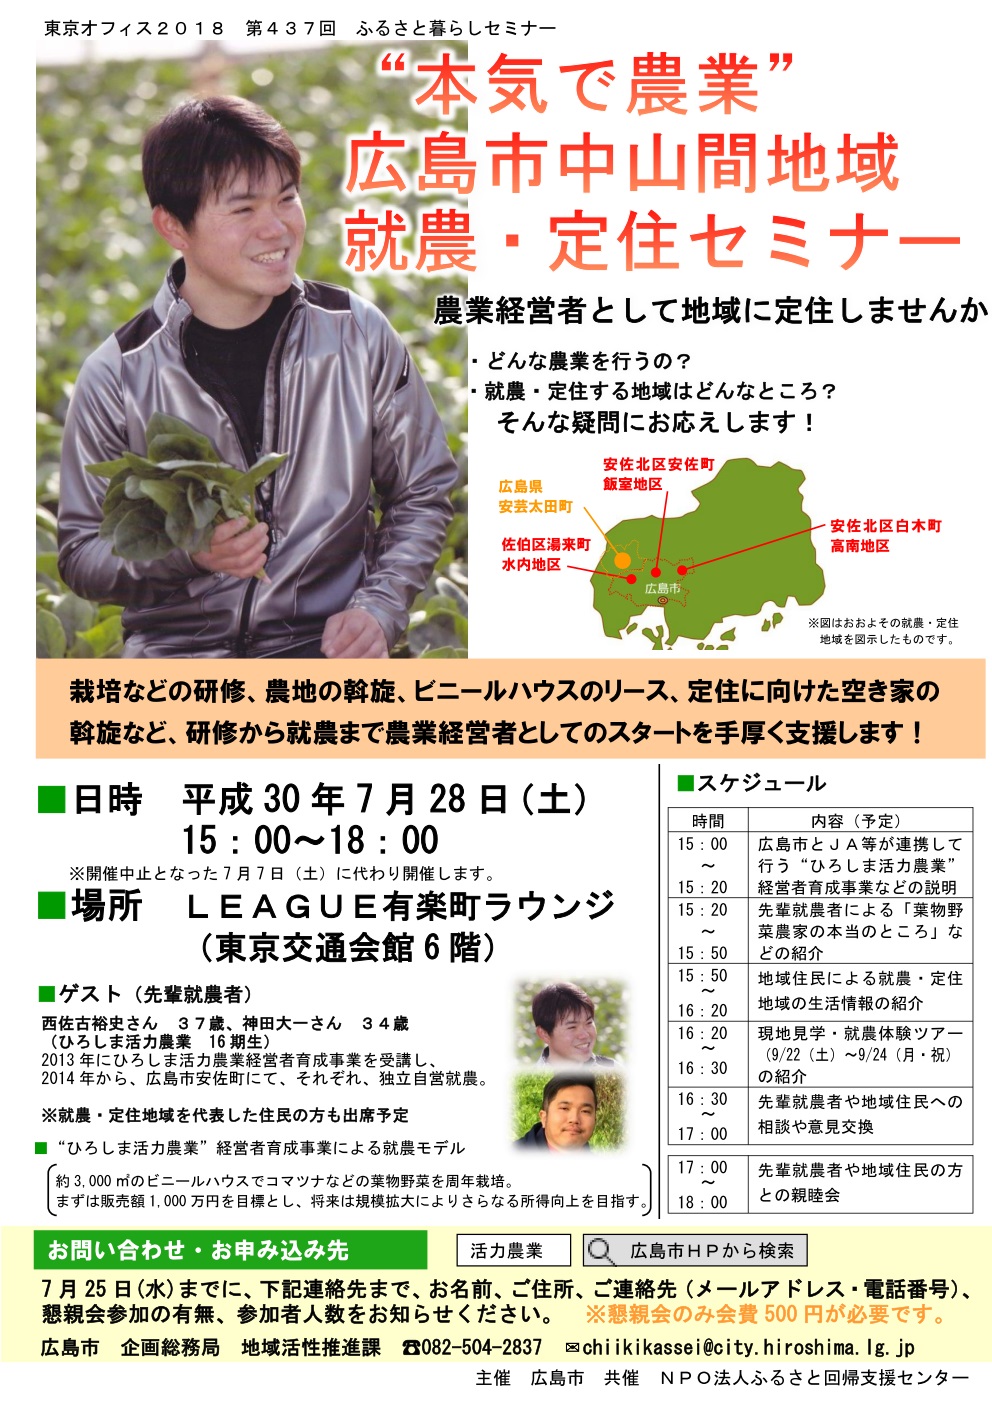 【再度開催決定！】”本気で農業”広島市中山間地域就農・定住セミナー | 移住関連イベント情報